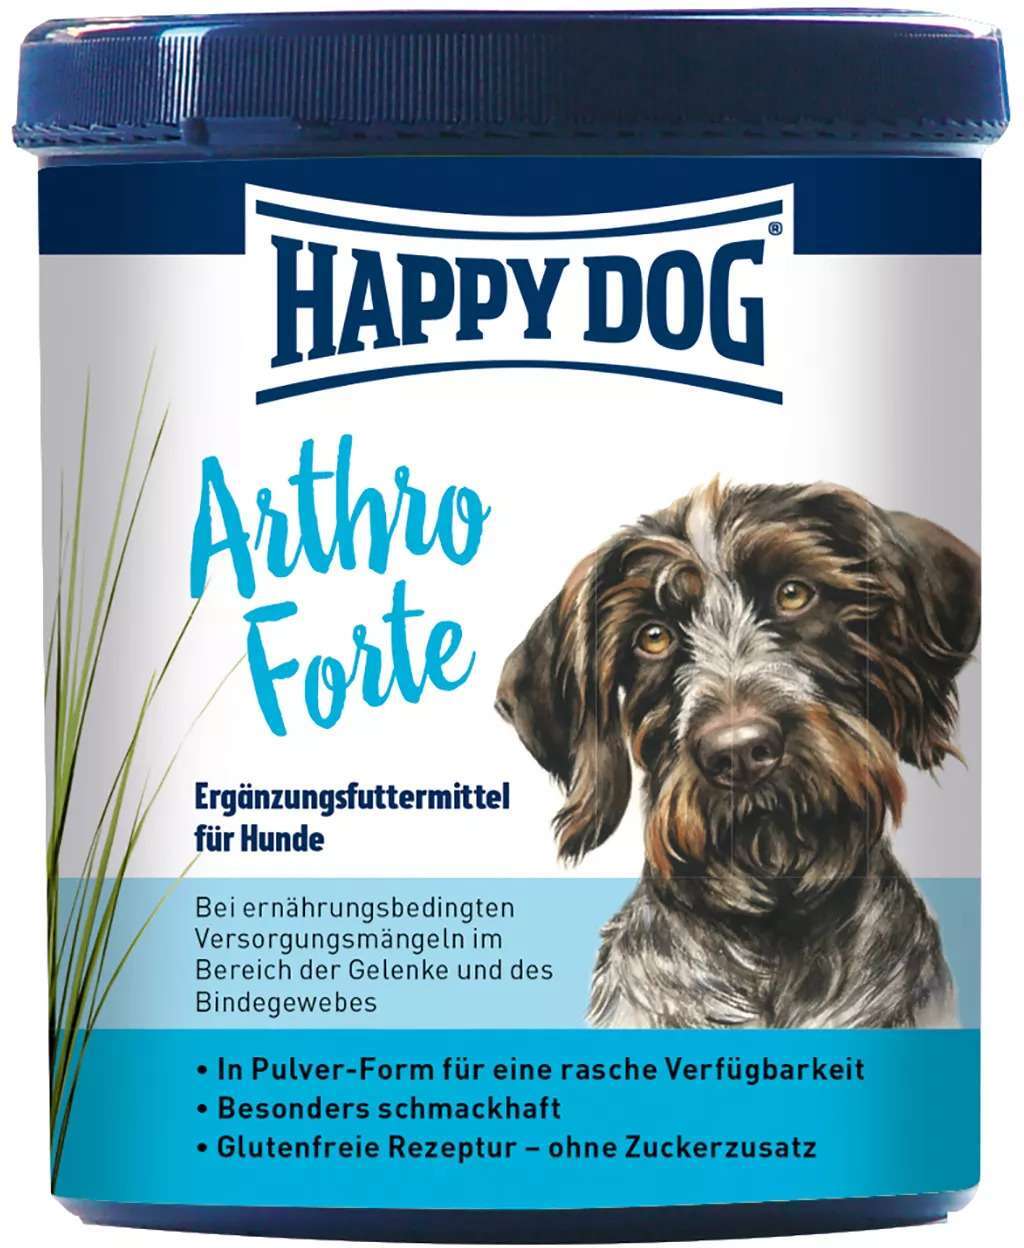 Happy Dog Arthro Forte suport pentru articulații și țesuturile conjunctive